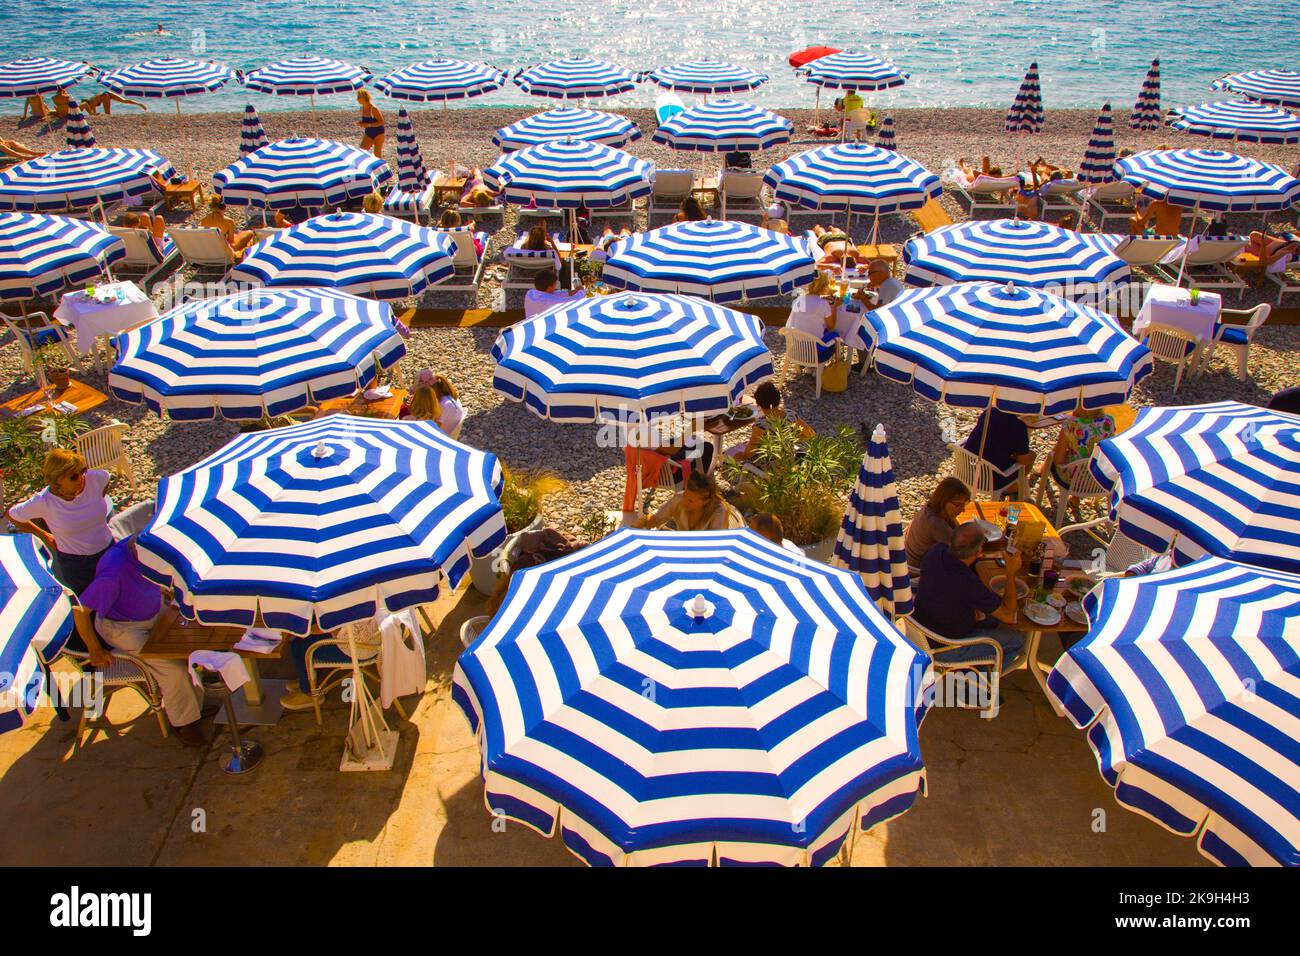 France, Cote d'Azur, Nice, beach, umbrellas, Promenade des Anglais, Stock Photo